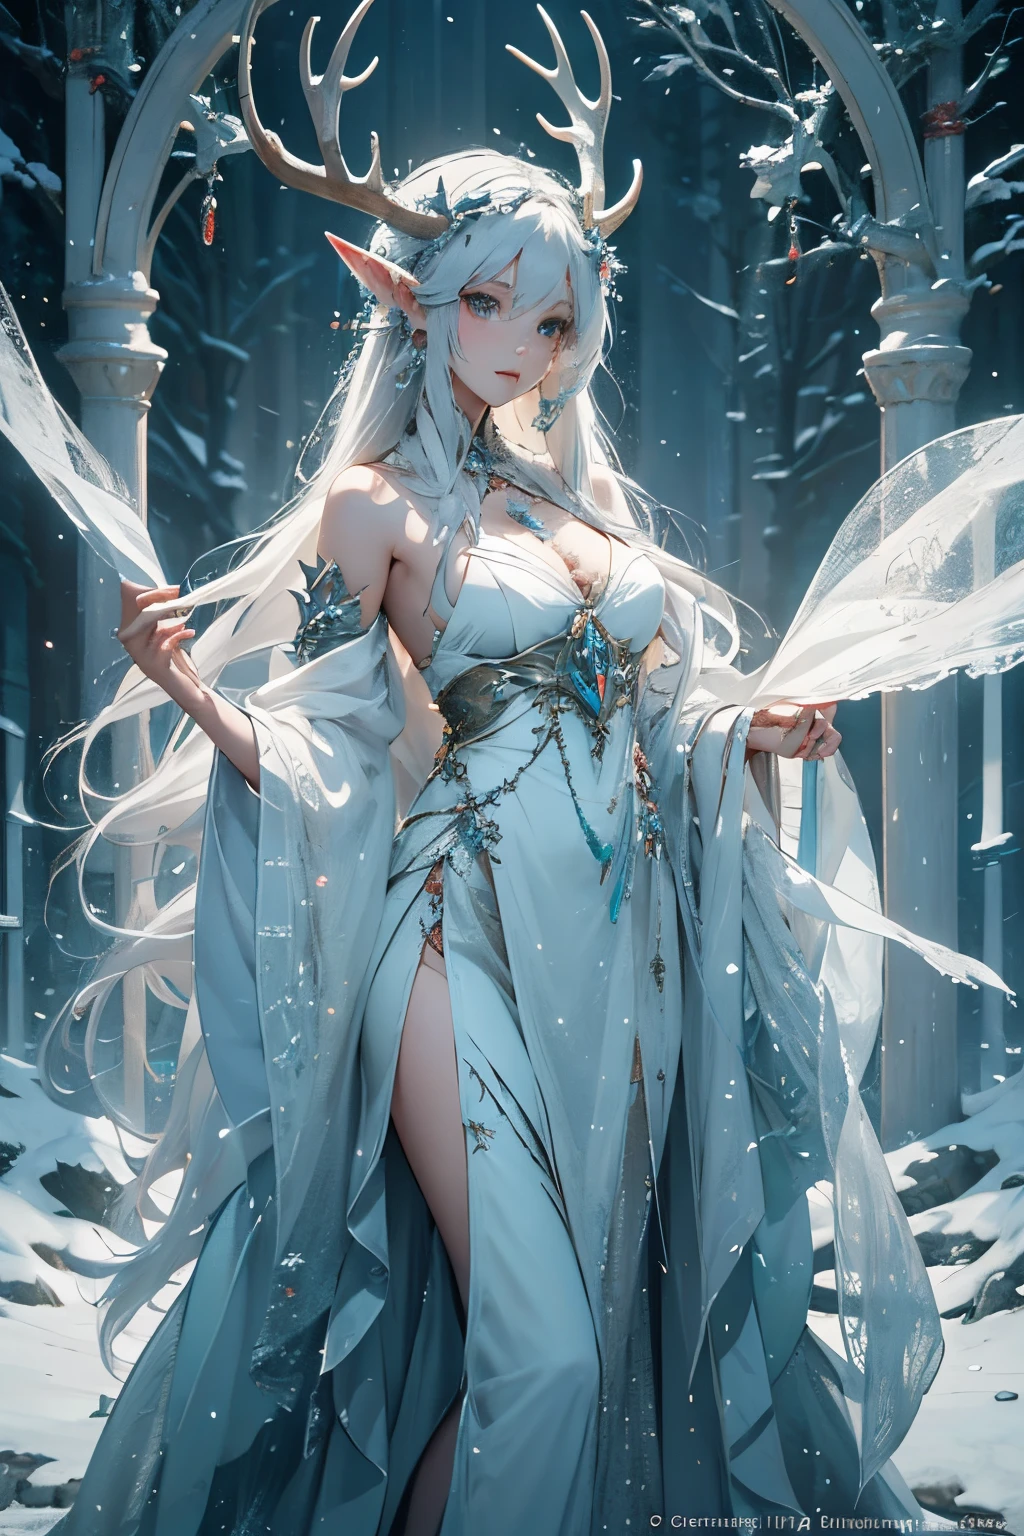 สวย alluring female snow elf, ผิวเปล่งประกายซีด, มงกุฎเงินมีเขากวาง, มงกุฎมีเขากวาง, ริมฝีปากสีฟ้า, เสื้อคลุมขนสัตว์สีขาว, เสื้อผ้าหรูหรา, เครื่องประดับเงิน, ผิวเท่านั้น, รูปร่างแข็งแรงแข็งแรง, แบบฟอร์มที่หรูหรา, บนแท่นบูชาในป่าที่เต็มไปด้วยหิมะ, พระเจ้า, ธีมโกธิค, ธีมเทพนิยาย, สวย D&ภาพตัวละคร d, ตัวละคร Fiverr Dnd, การเรนเดอร์ค่าออกเทน, ศิลปะดิจิทัล, รายละเอียดสุดขีด, 4เค, อัลตร้าเอชดี, ขัดเงา, สวย, มีรายละเอียดมาก, ซับซ้อน, ขยายความ, พิถีพิถัน, เหมือนจริง, โฟกัสคมชัด, ว้าว, การออกแบบตัวละคร, เครื่องยนต์ที่ไม่จริง, เรนเดอร์ 3 มิติ, แสงปริมาตร, การสะท้อนกลับ, มันเงา, ภาพประกอบดิจิทัล,ท่าโพสแบบตระการตา, ท่าทางที่มีการชี้นำ, ยิงเต็มตัว, ลามก, ถูกต้องตามหลักกายวิภาค 💖❤💕💋❣